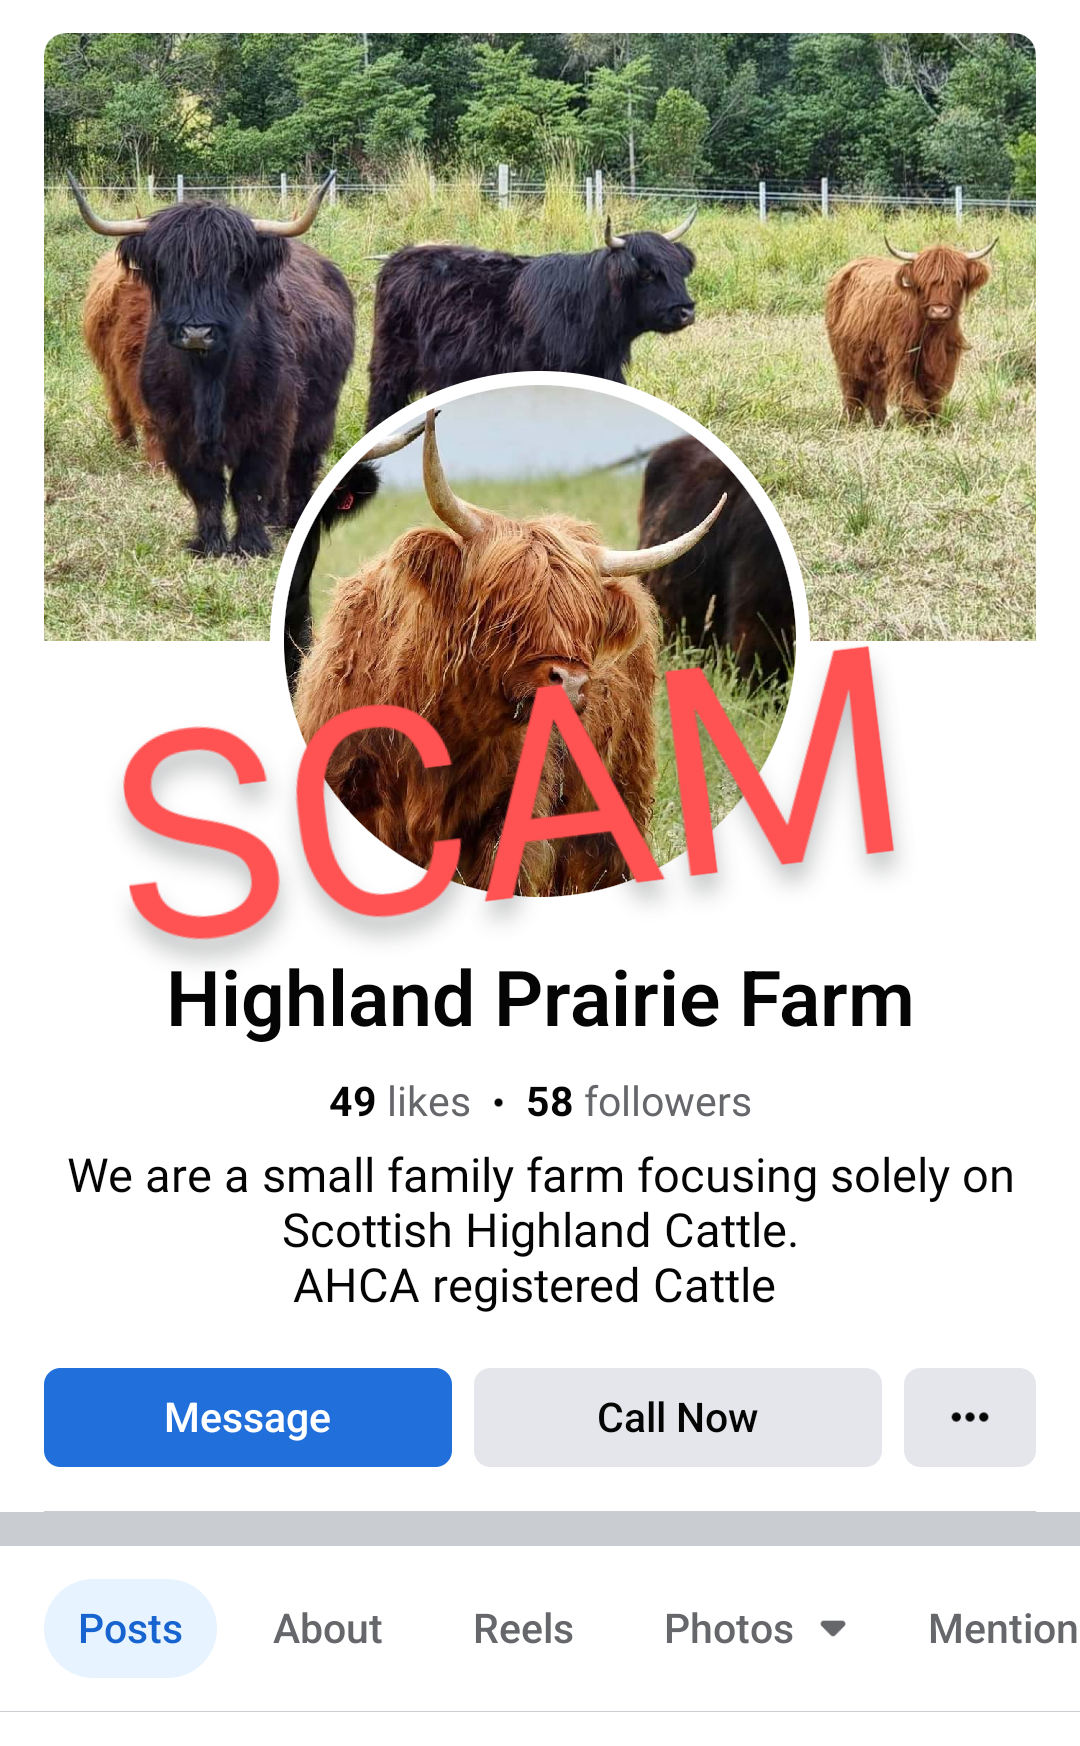 SCAM - Highland Prairie Farm